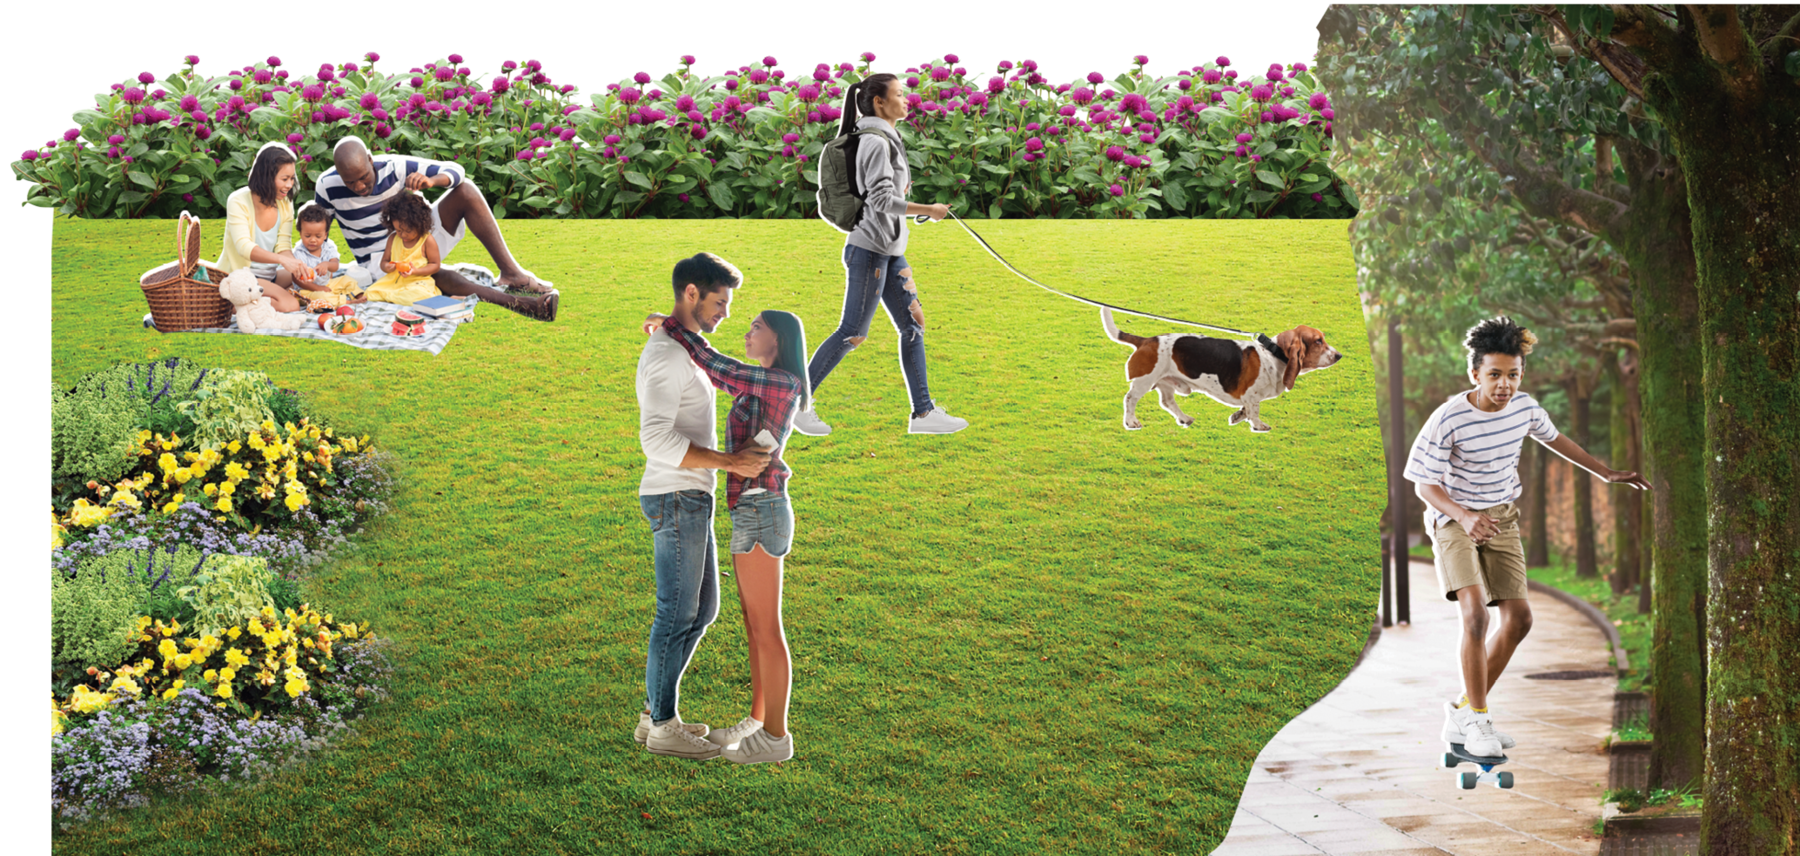 Fotomontagem. No centro, um gramado com flores amarelas à esquerda e flores roxas ao fundo. Sobre o gramado, recorte de fotos de um casal abraçado, uma moça passeando com um cachorro na coleira e uma família com duas crianças fazendo piquenique. À direita, recorte de uma foto de um garoto andando de skate entre as árvores.